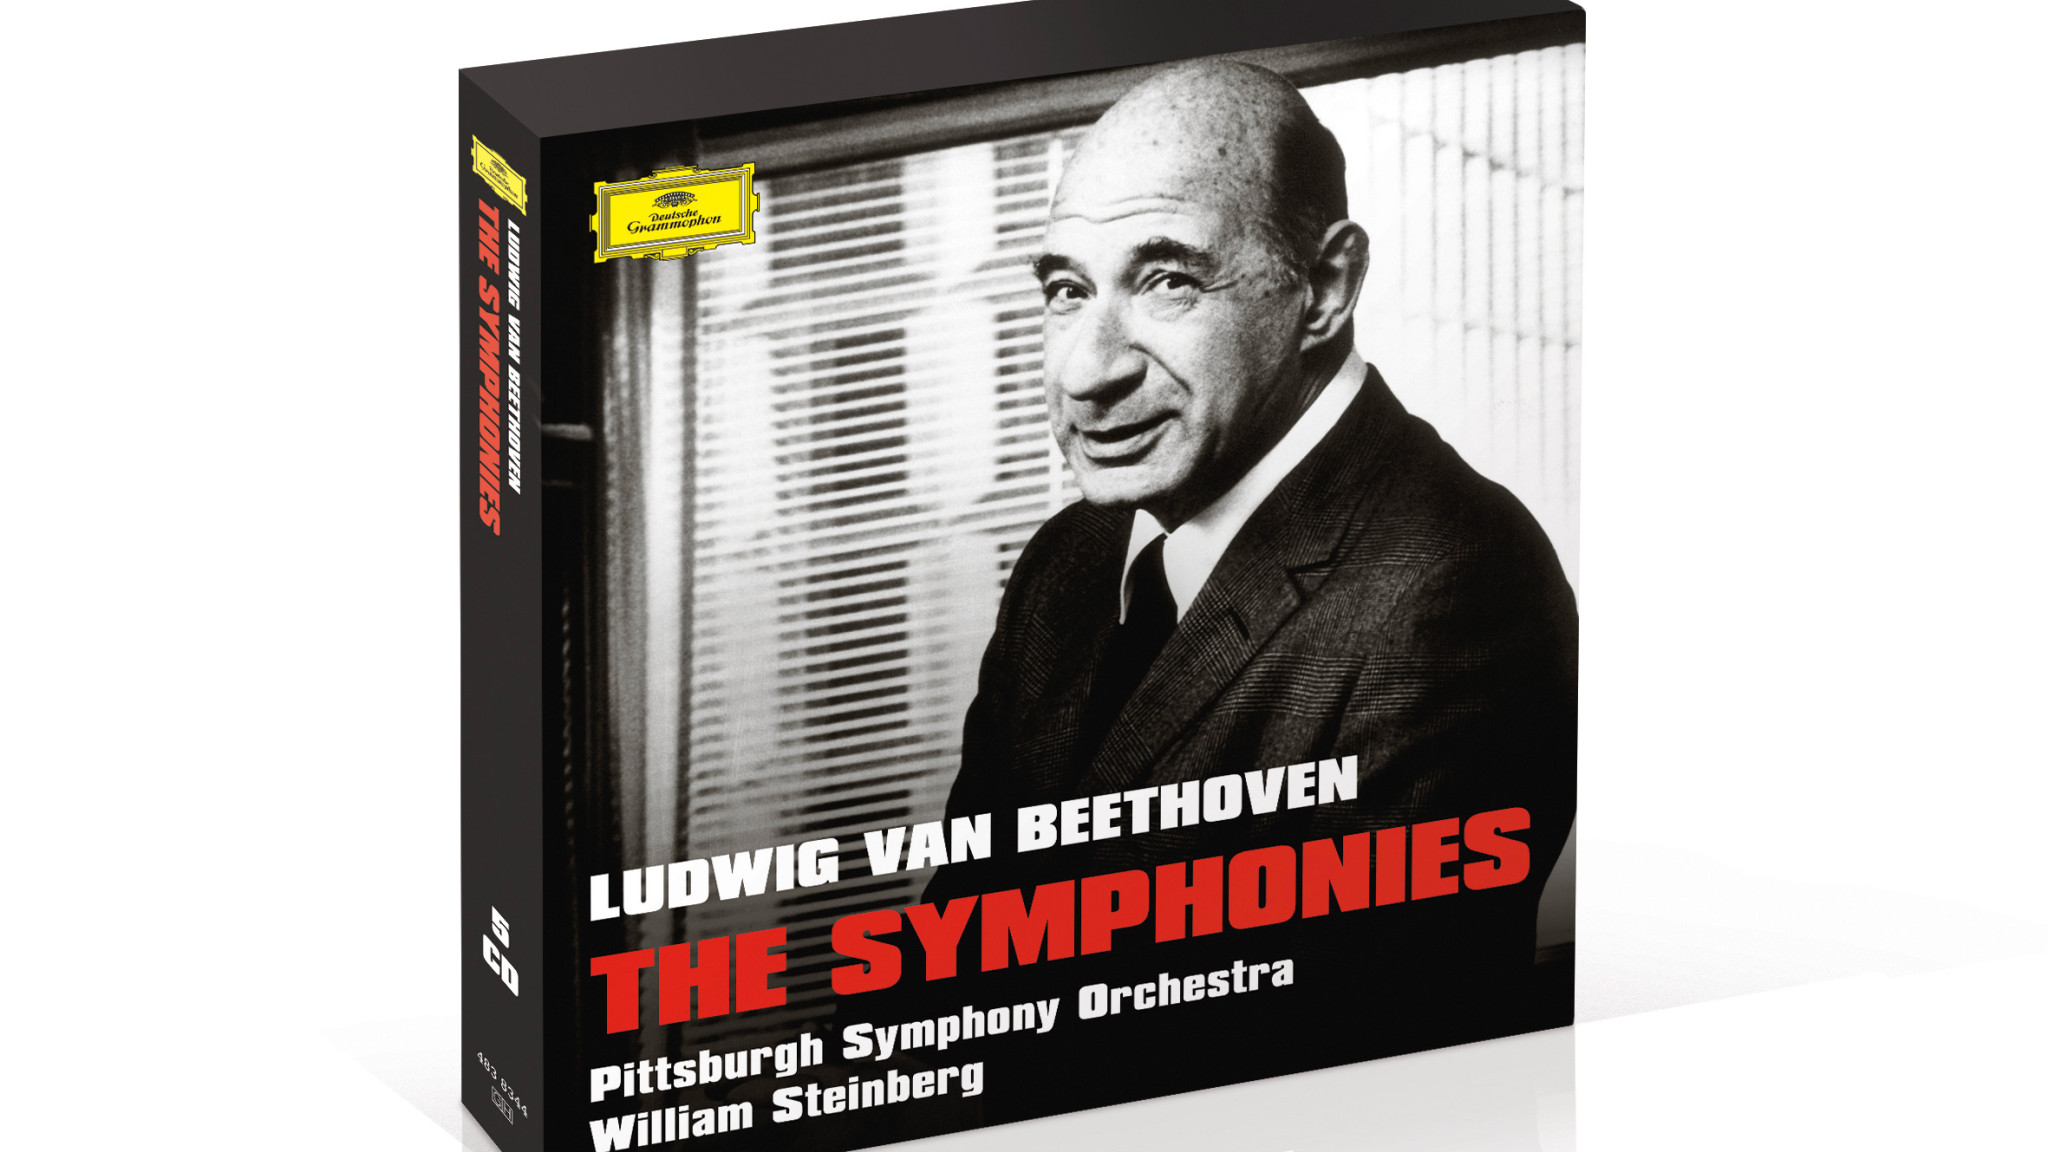 Musikalische und klangtechnische Offenbarung – William Steinbergs Zyklus sämtlicher Beethoven-Sinfonien